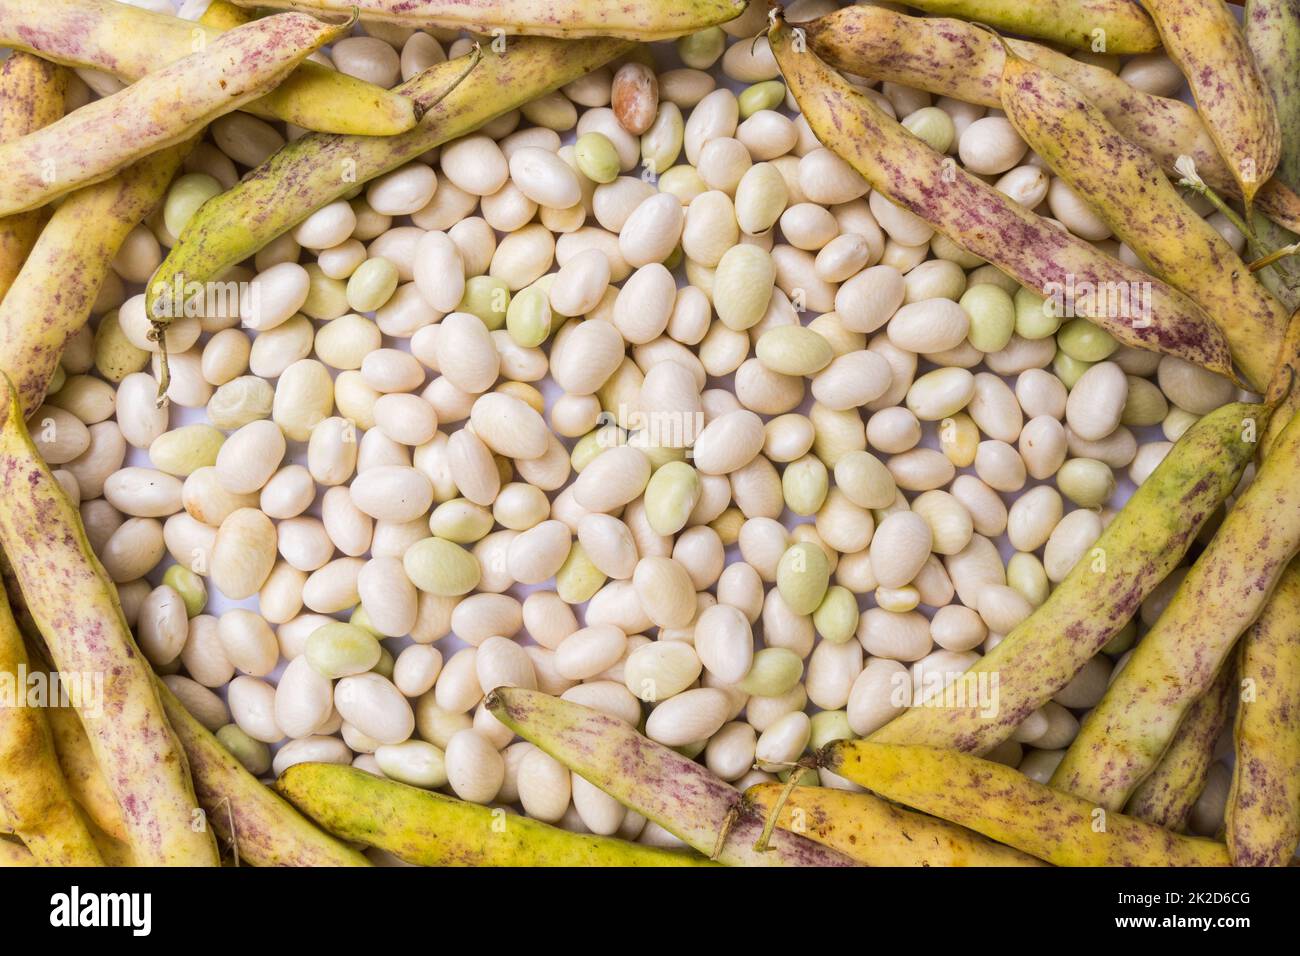 Coco de Paimpol beans background Stock Photo